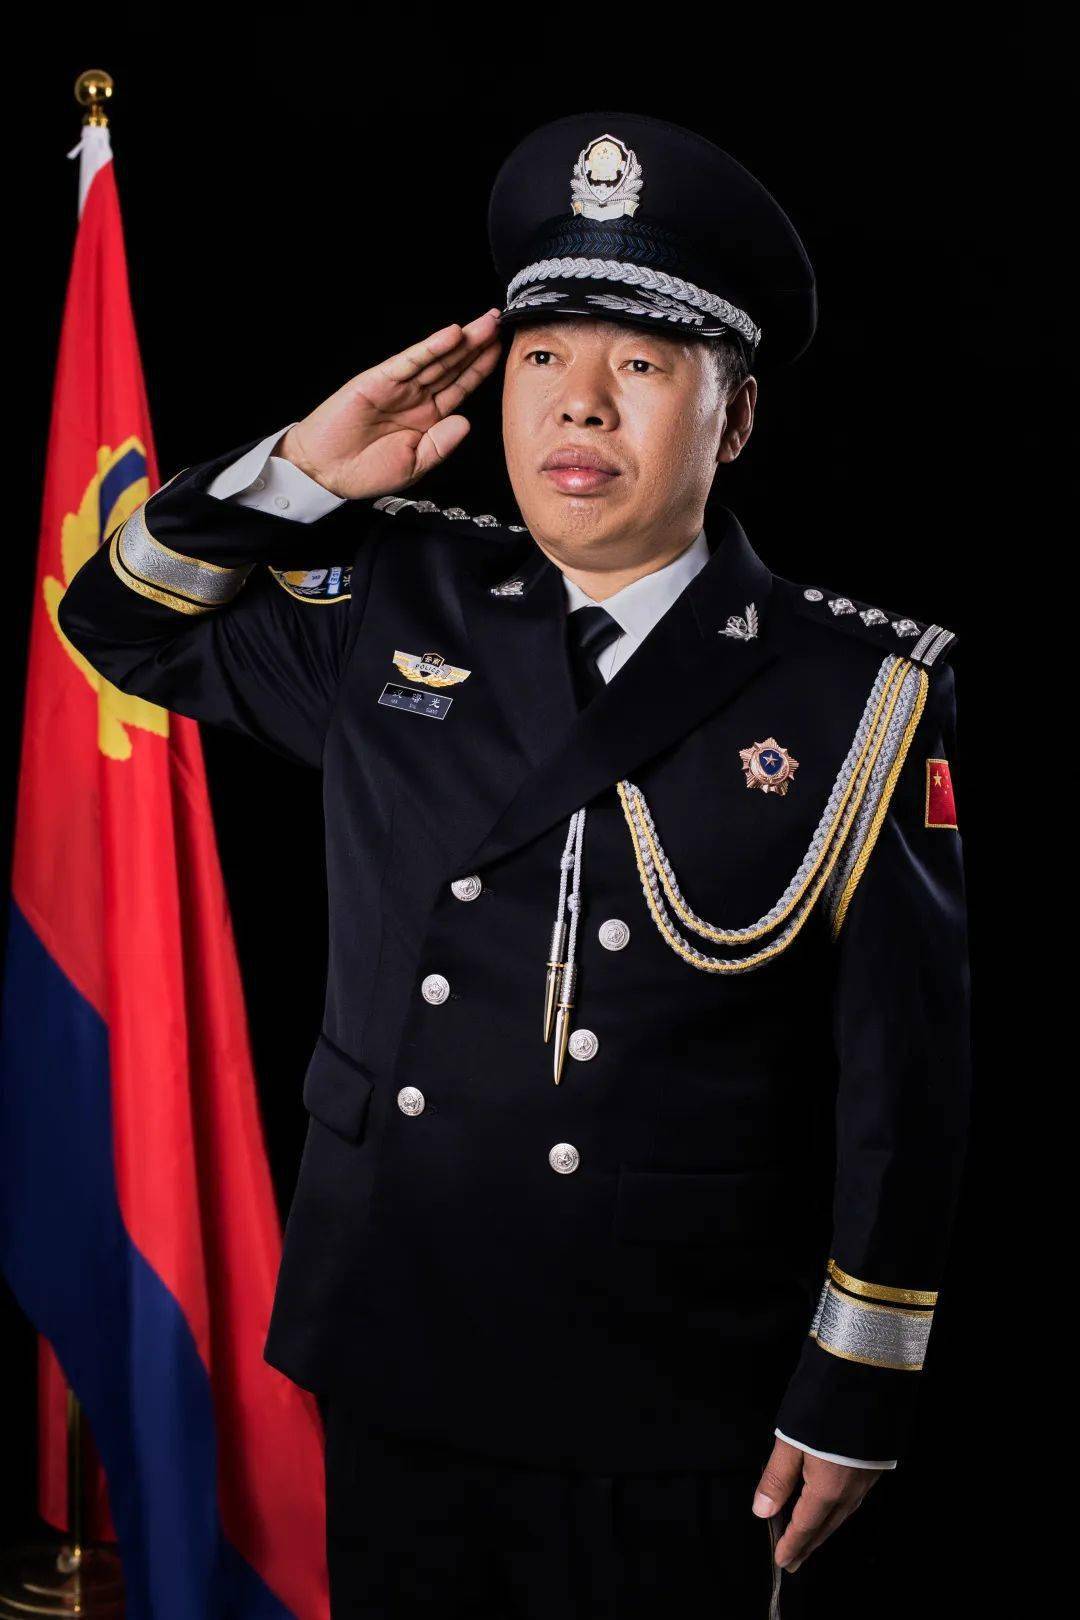 贡山县柔中带钢的绶带熠熠生辉的警章人民警察再添新战袍一身警